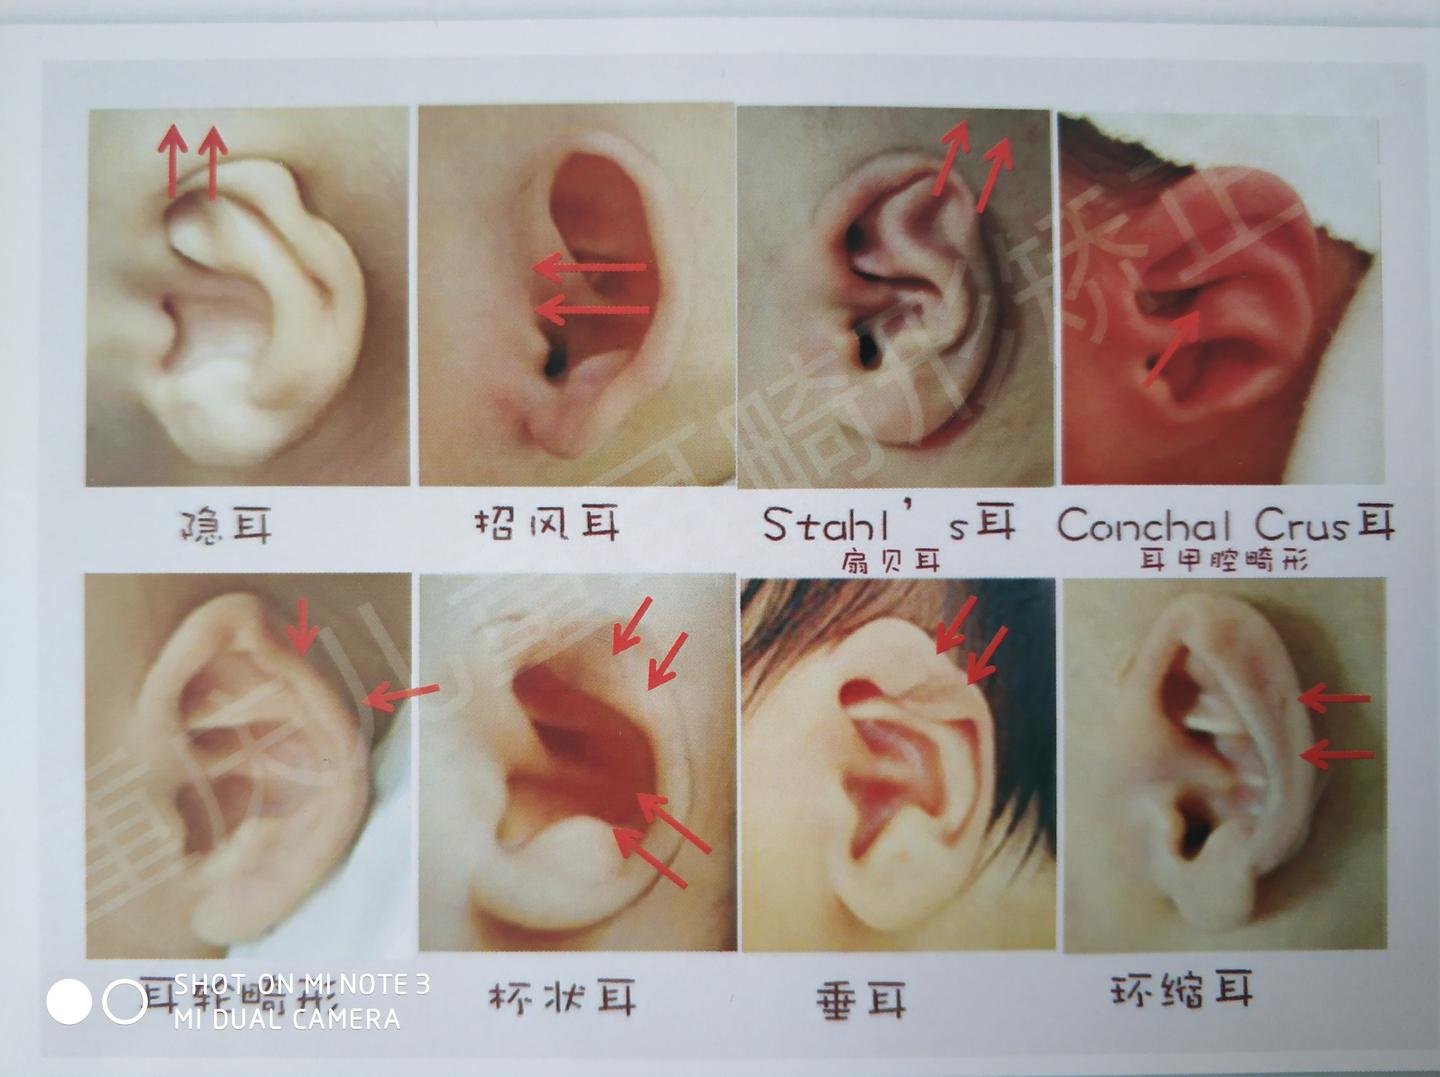 耳鼻喉申医生 67 重庆医科大学临床医学硕士 2人 赞同了该文章